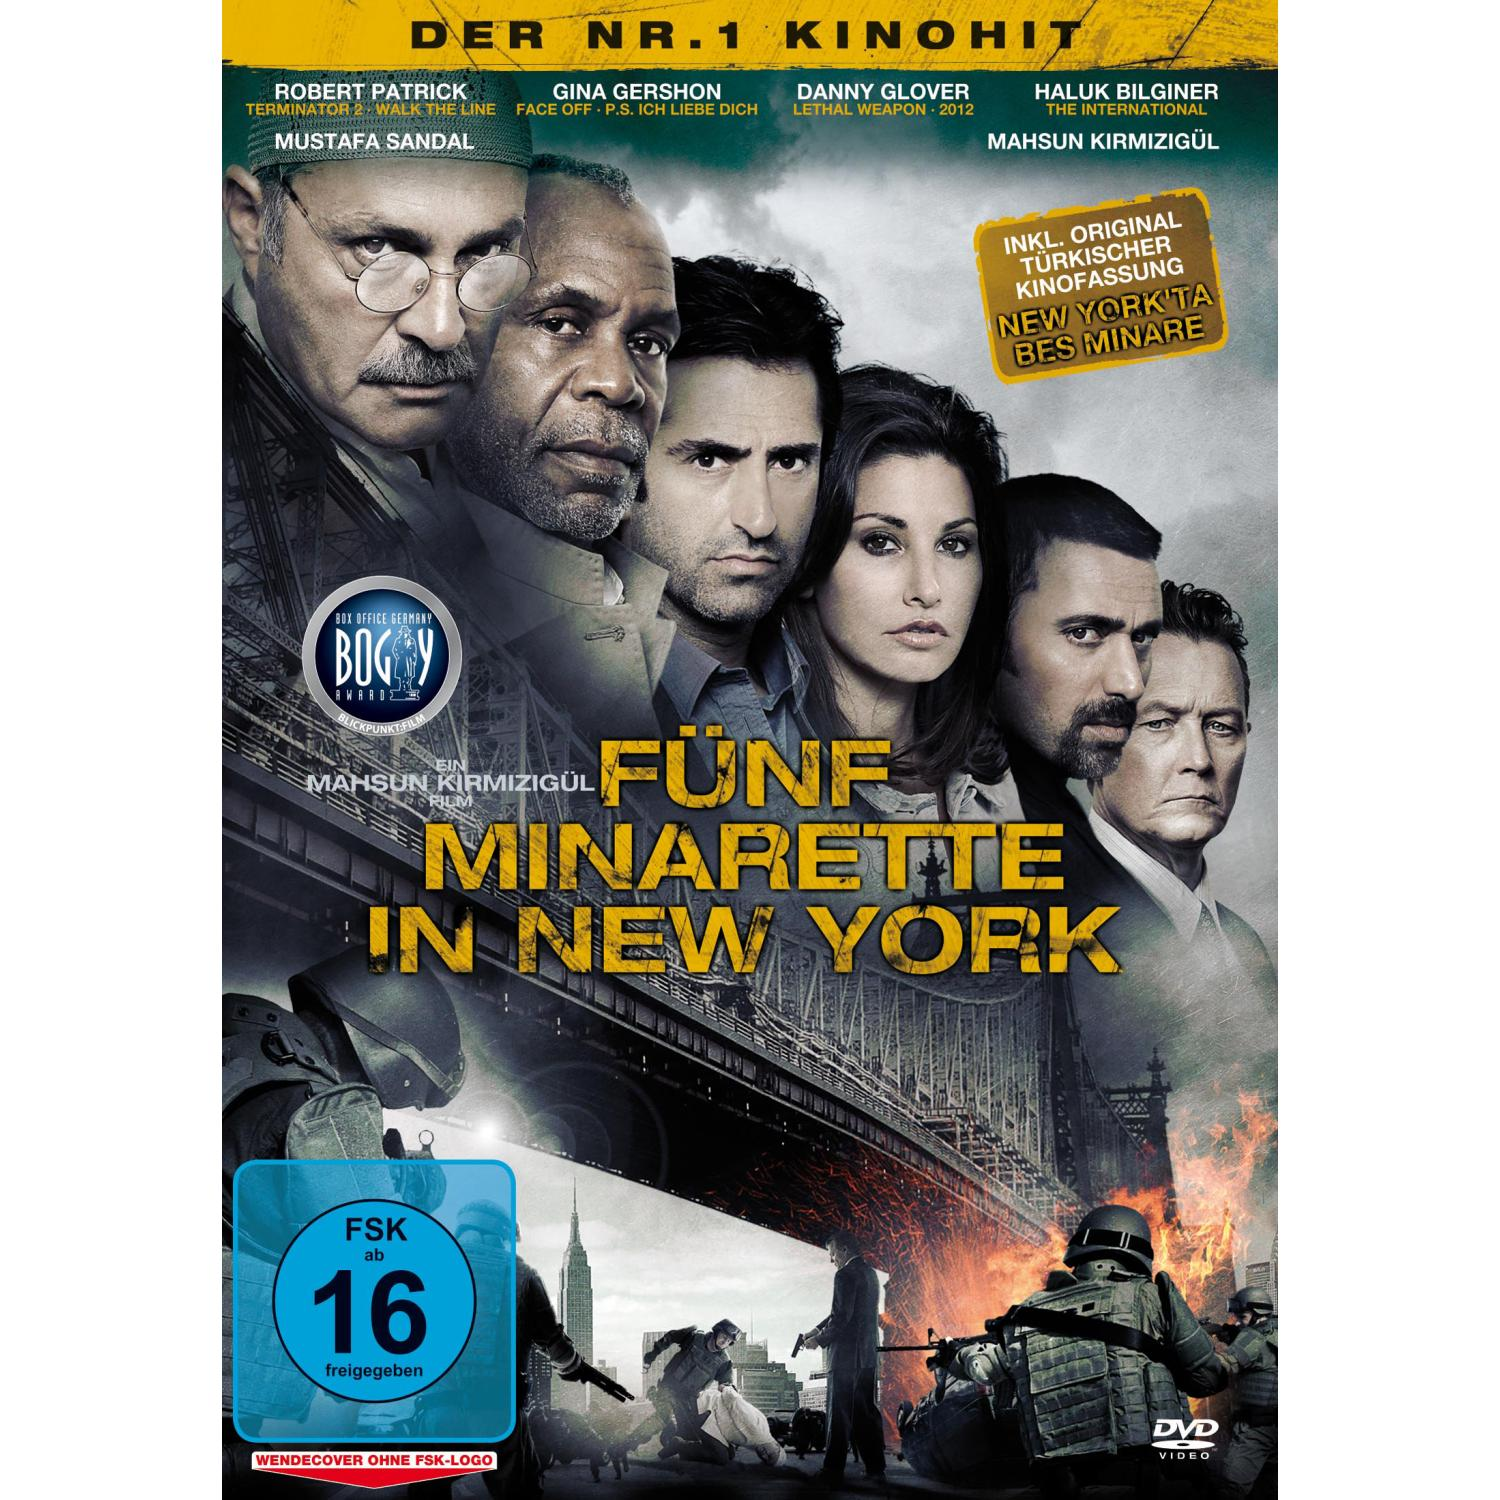 DVD NEW IN MINARETTE FÜNF YORK (KINOFASSUNG)